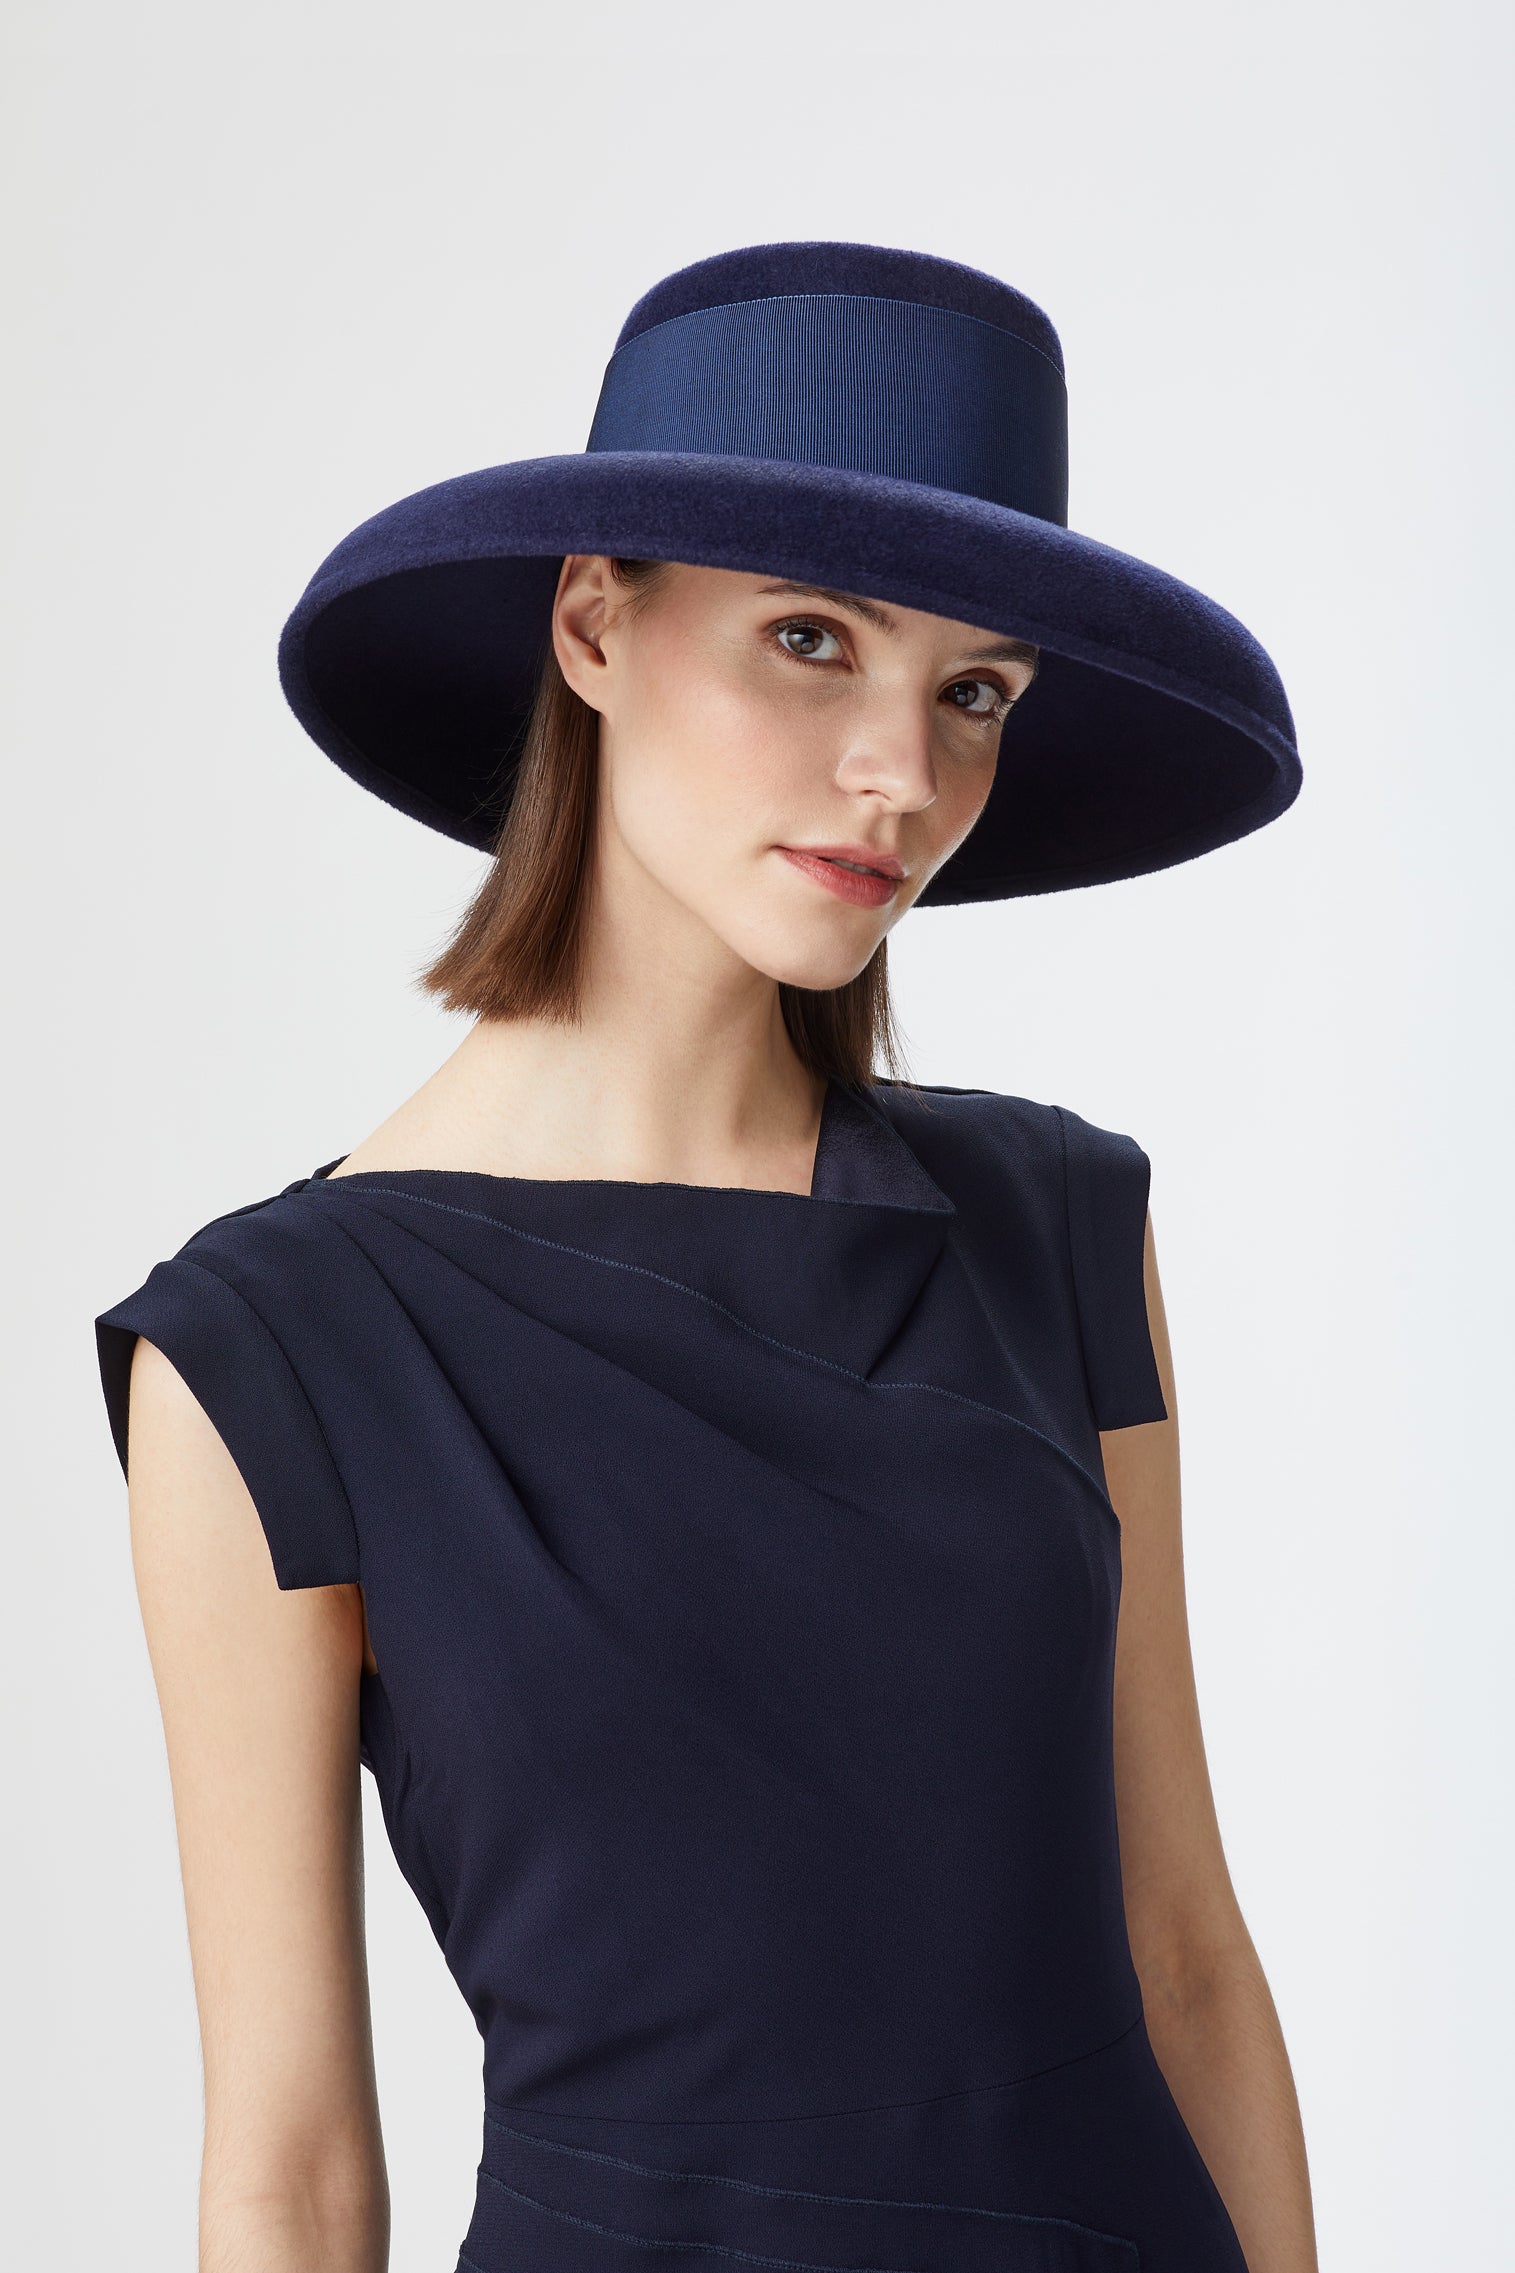 Tiffany Drop-Brim Hat - Black Hats for Women - Lock & Co. Hatters London UK